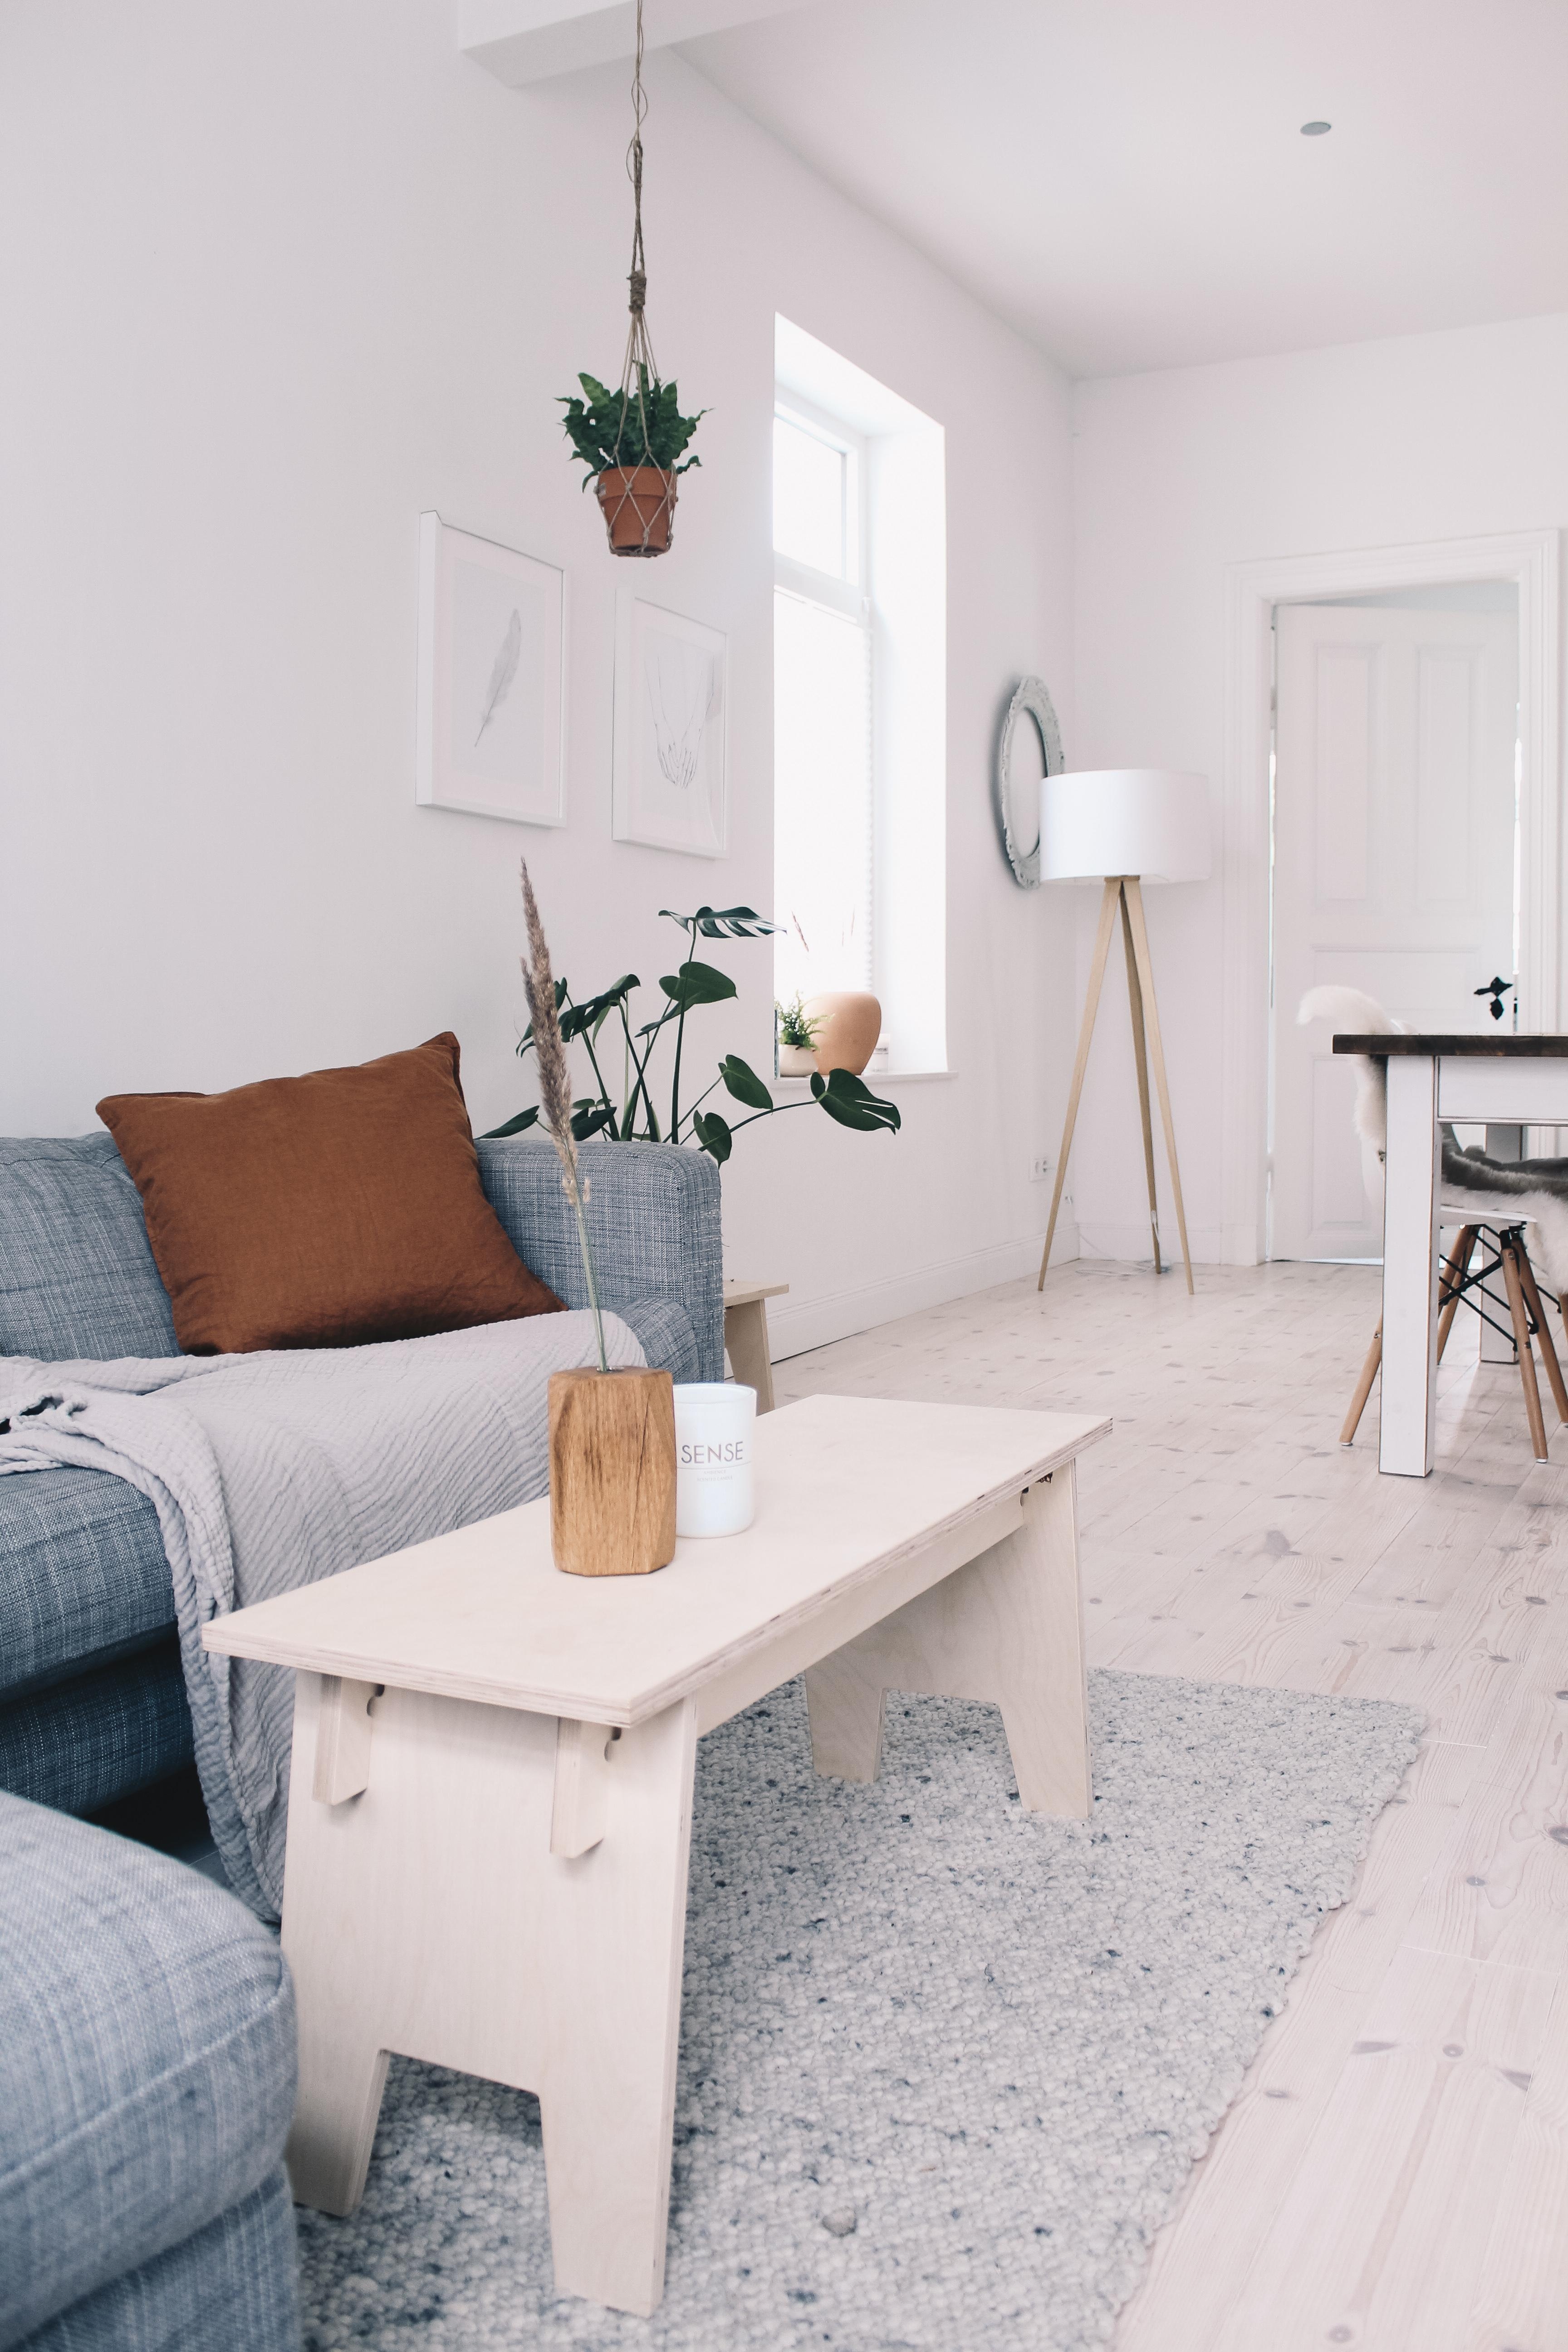 Unser Wohnzimmer im Scandi Look.
#holzbank #sofa #altbau #minimal